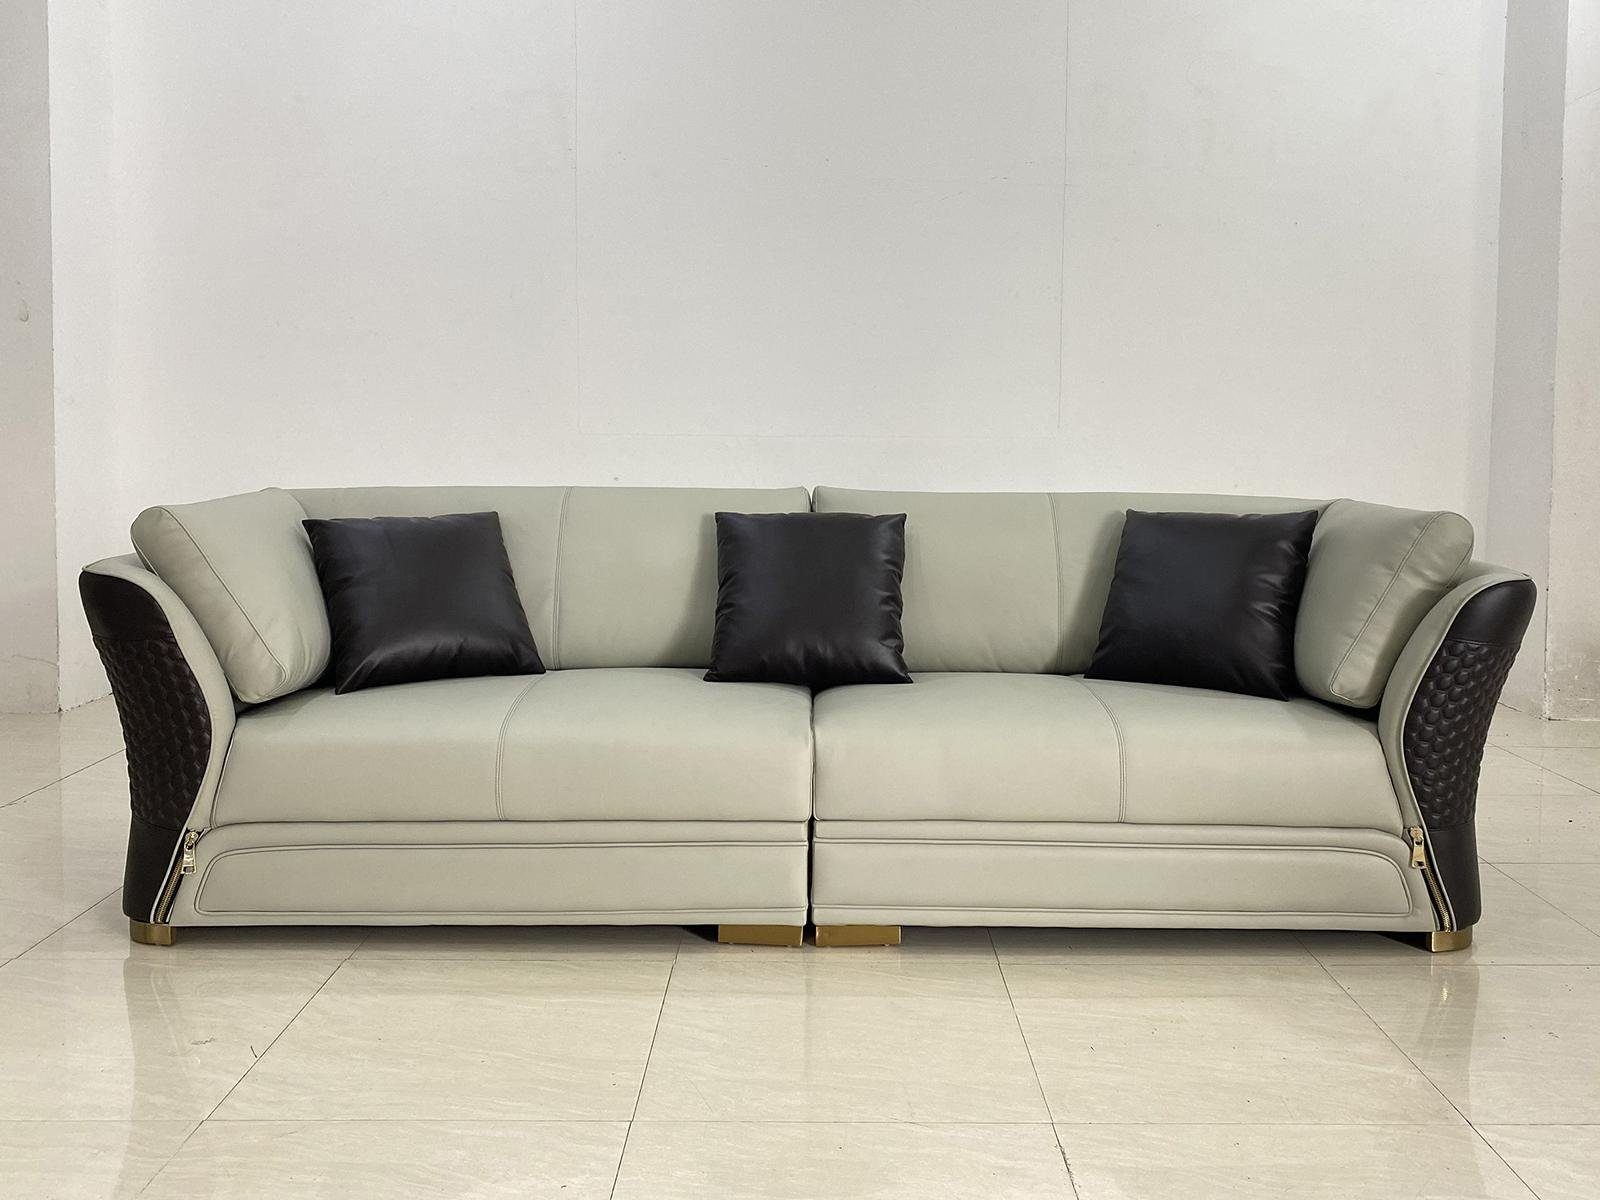 JVmoebel 4-Sitzer, Couch Zimmer Polster Moderne Sofas Design Sofa Weiß 4er Sitz Wohn